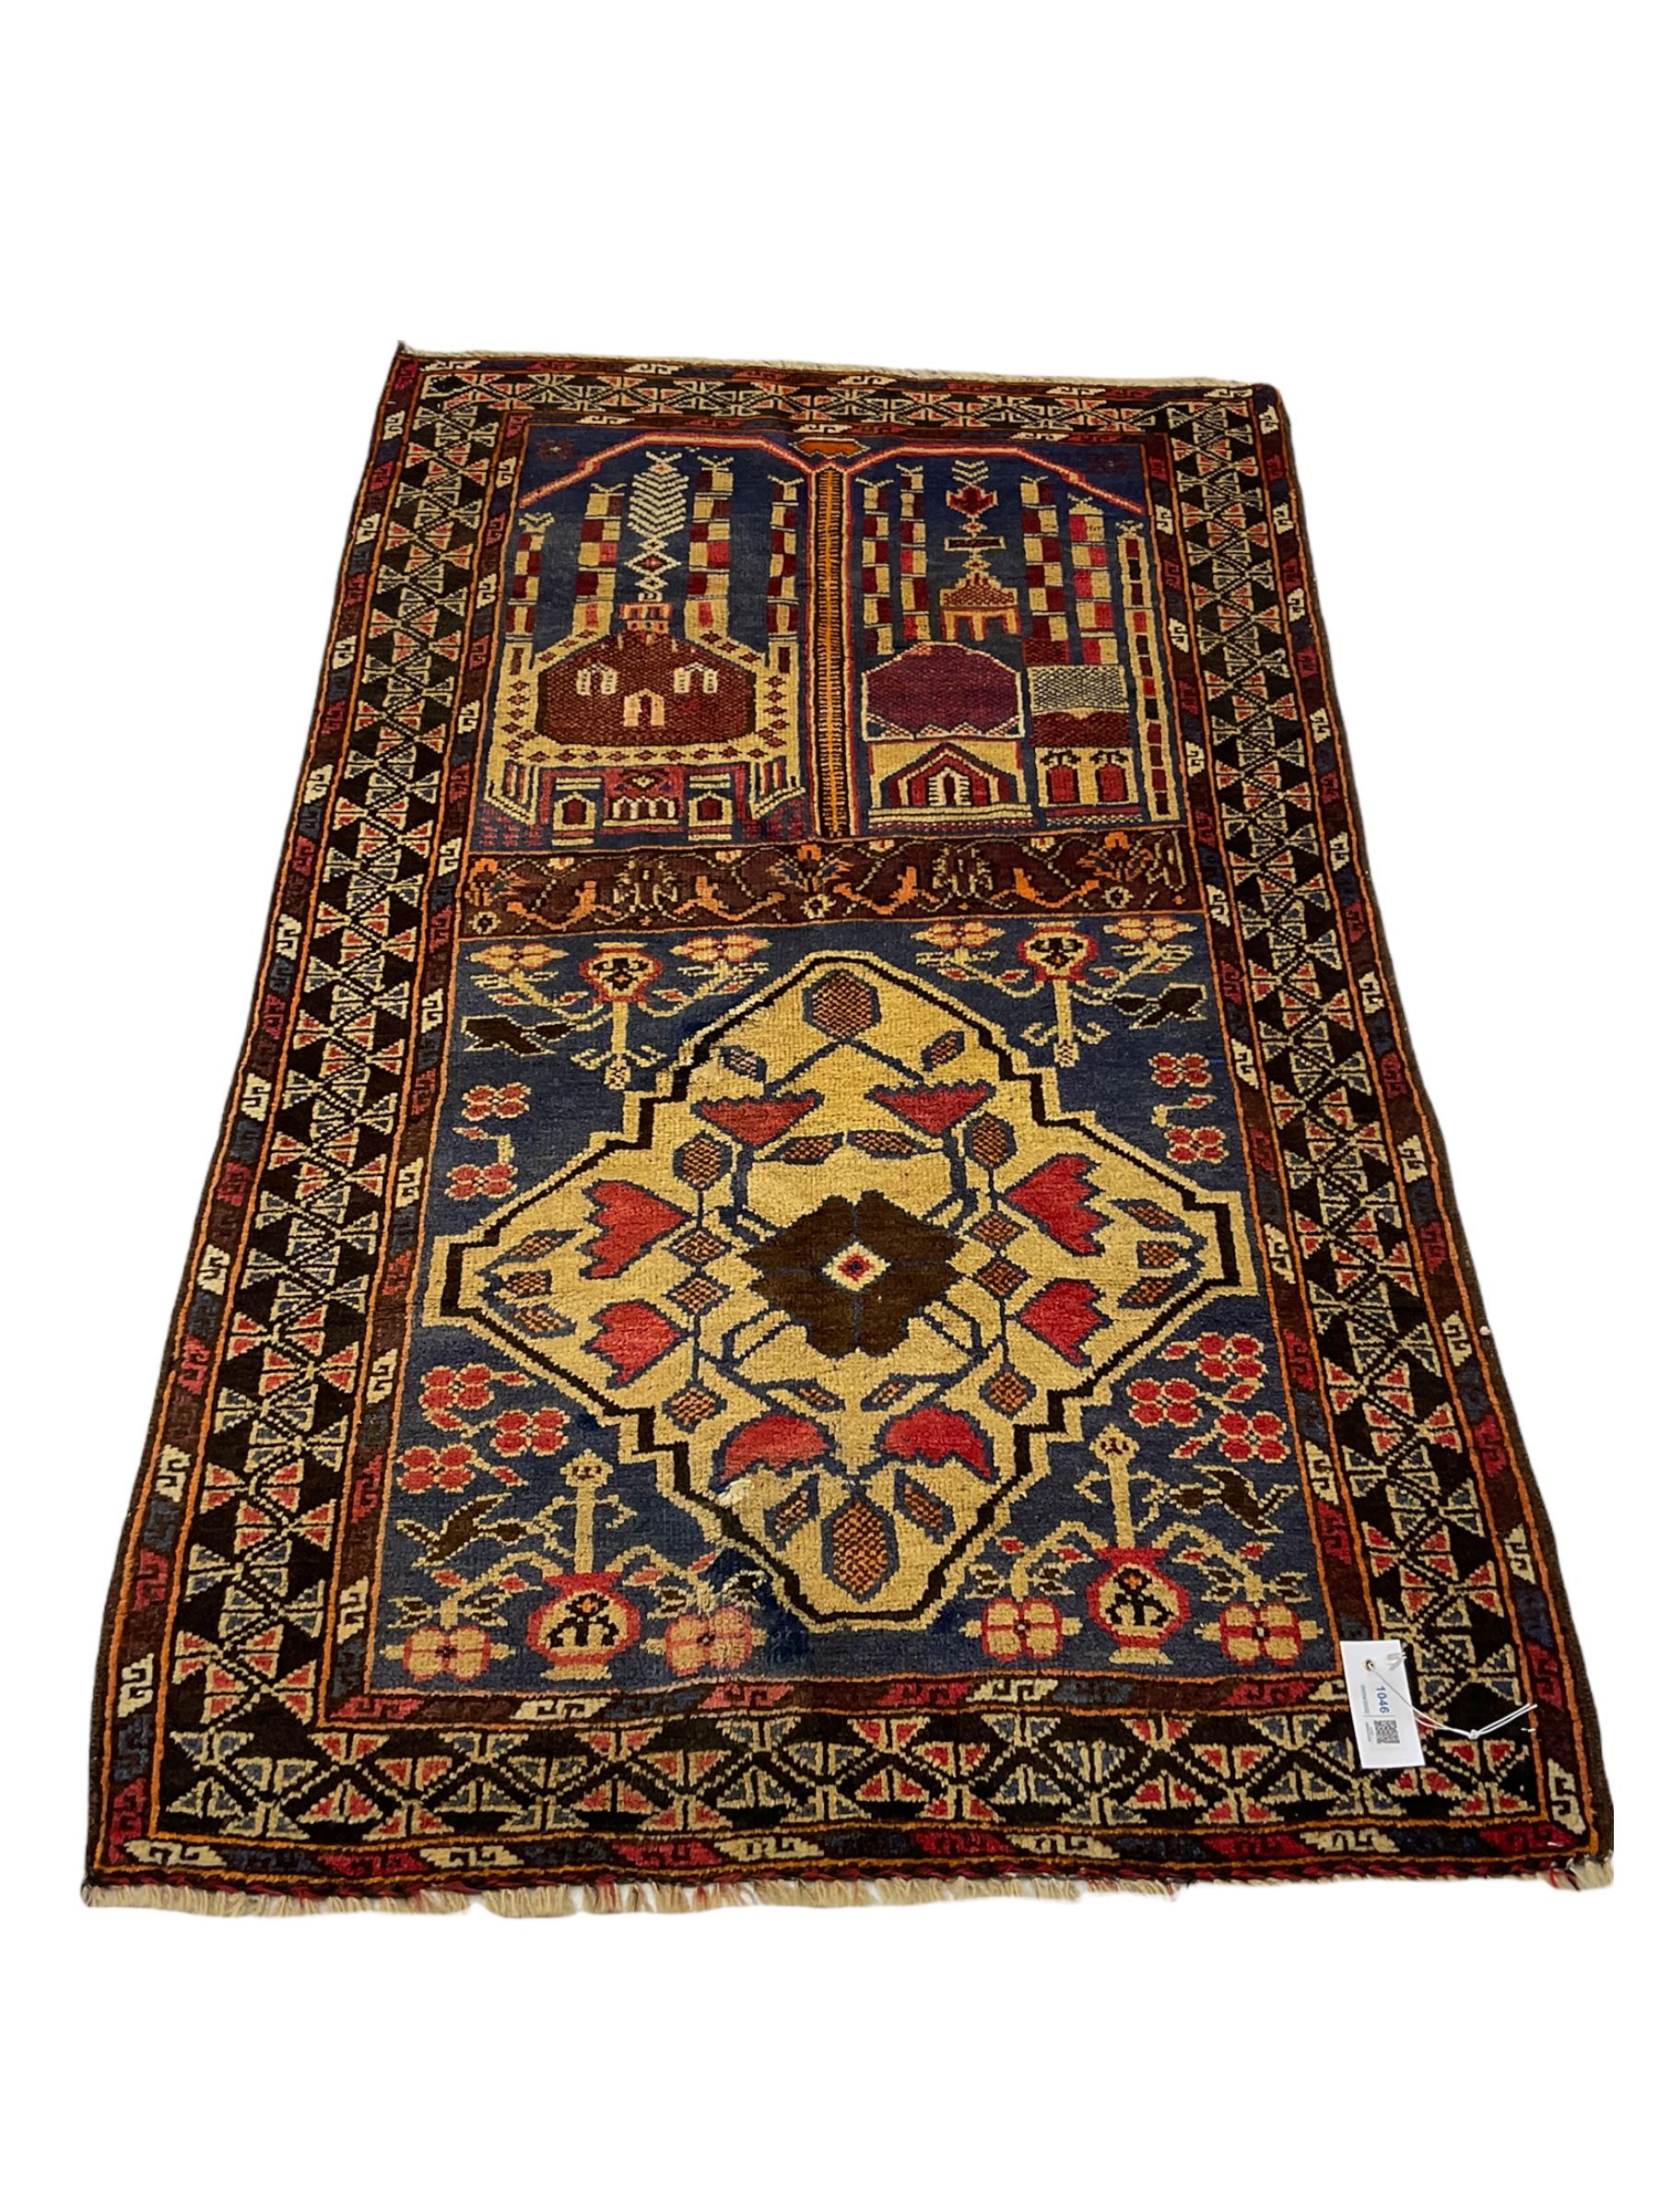 Old Baluchi rug - Image 2 of 6